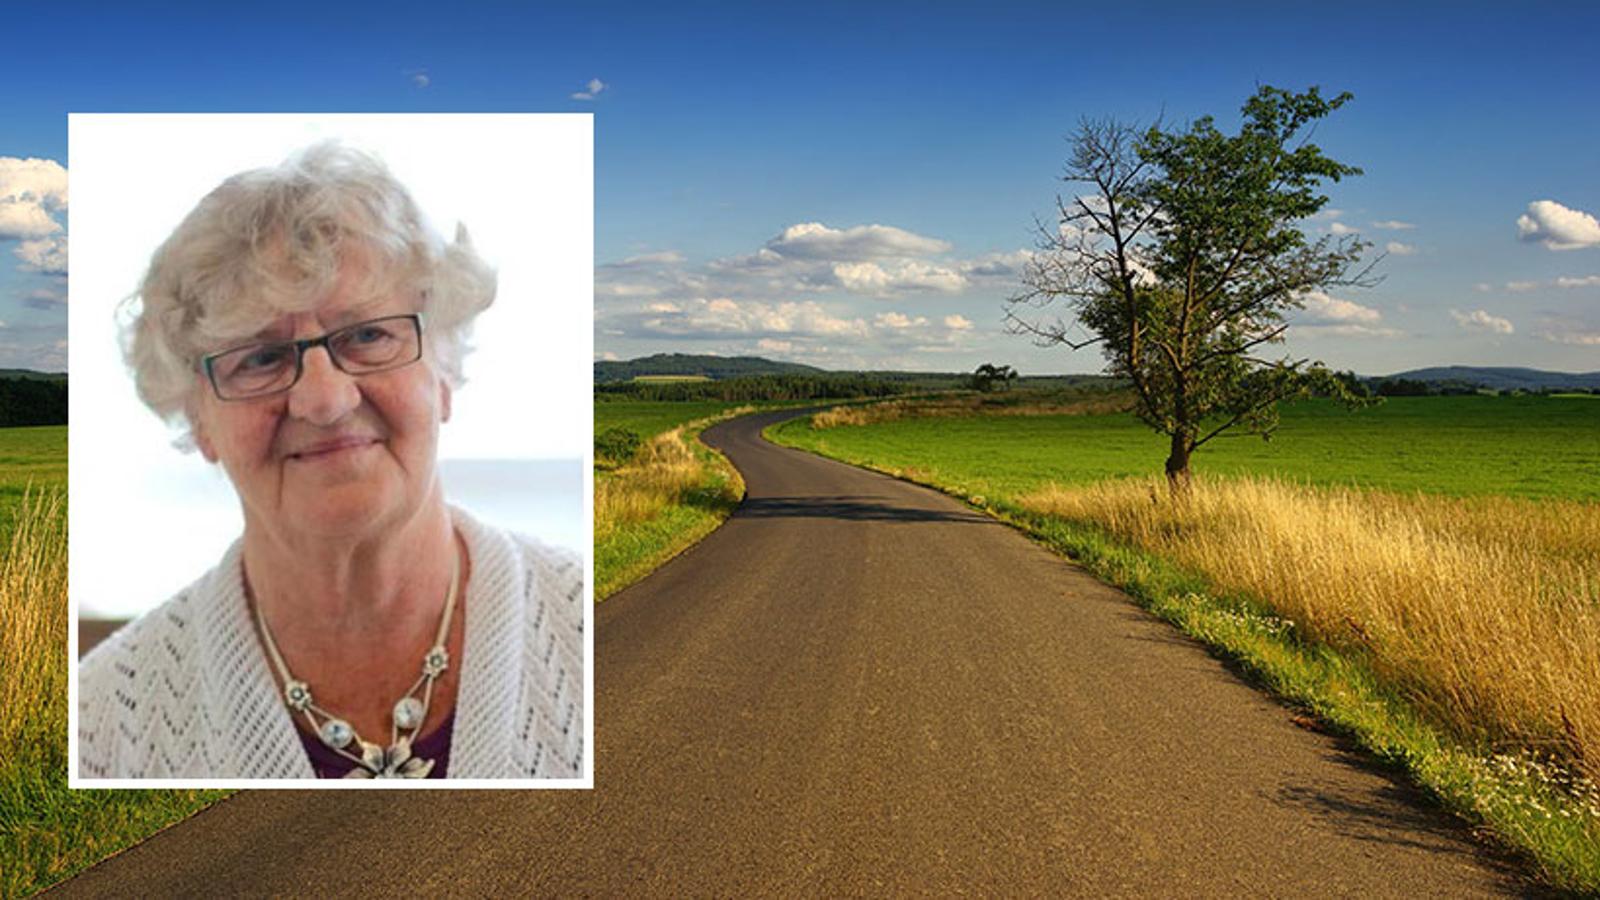 Till vänster: Porträttbild av Mariann Wiklund. Hon tittar till höger om kameran med ett leende. Till höger: En landsväg bland gröna ängar.